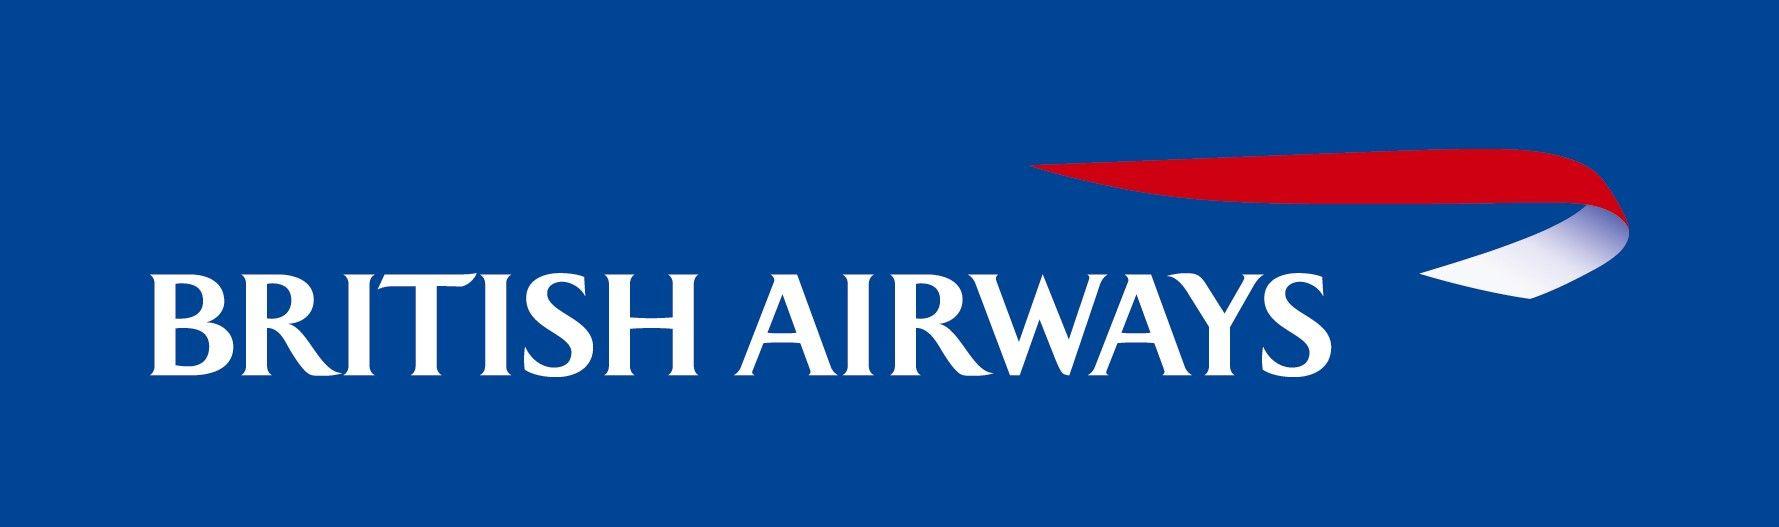 British Airline Logo - British Airways Logo #BritishAirways #Logo - #Photo #Pictures ...